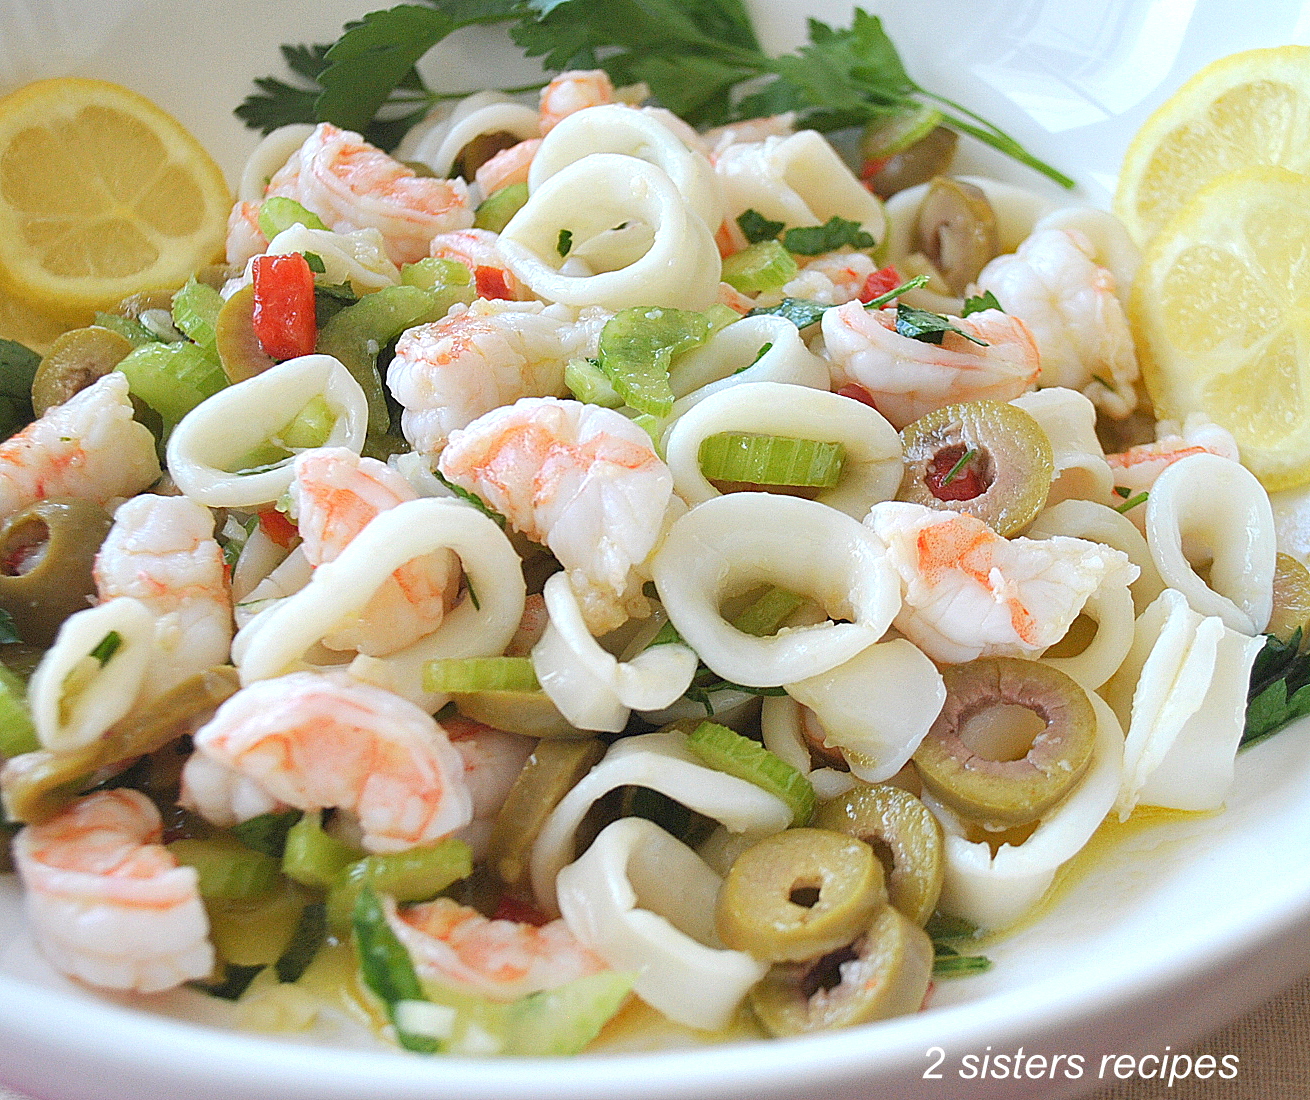 Shrimp and Calamari Salad by 2sistersrecipes.com